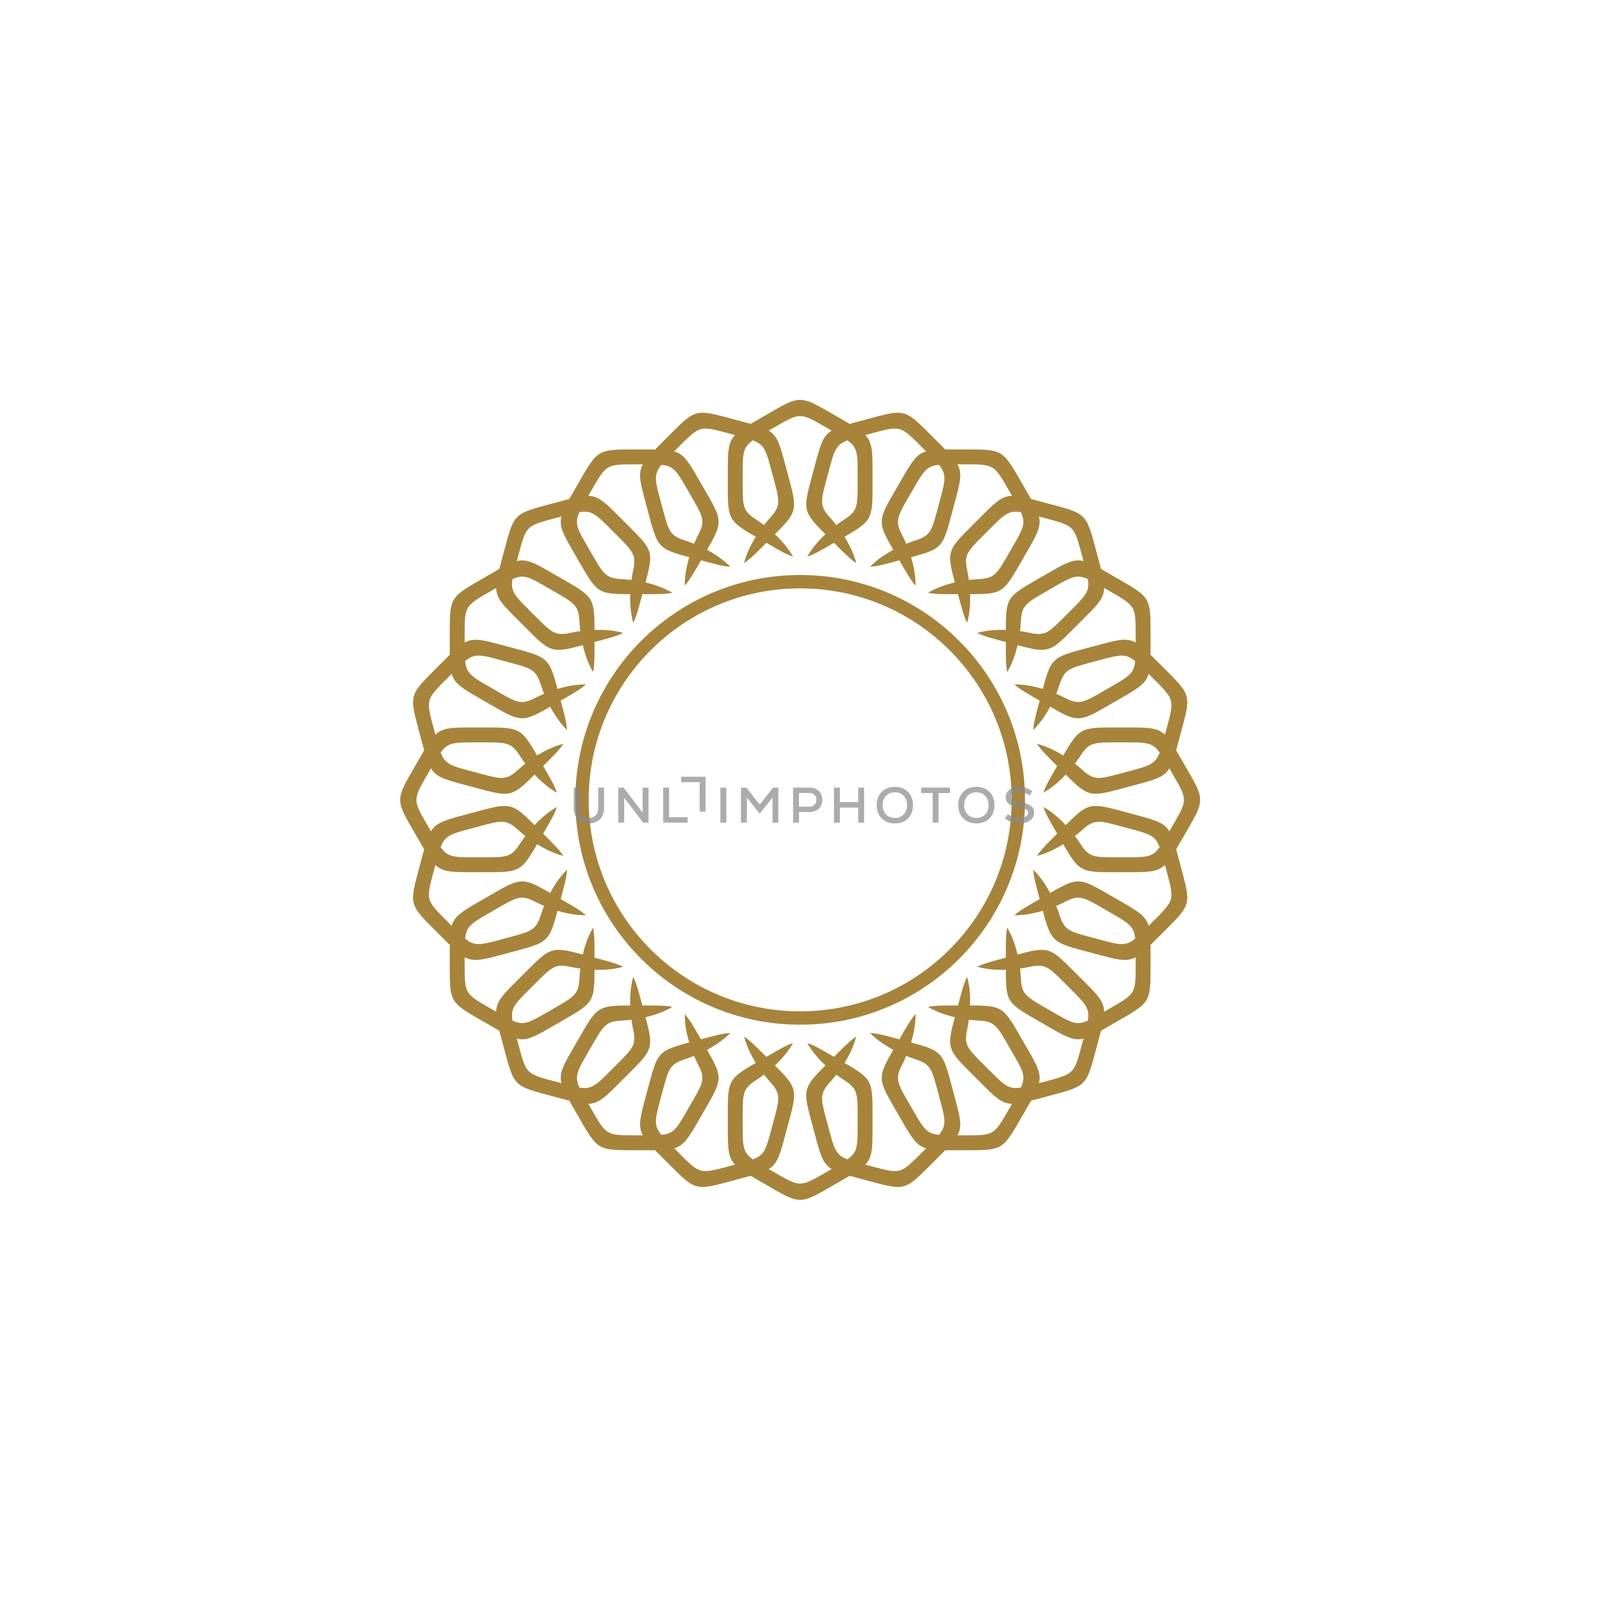 Gold Frame Flower Logo Template Illustration Design. Vector EPS 10.